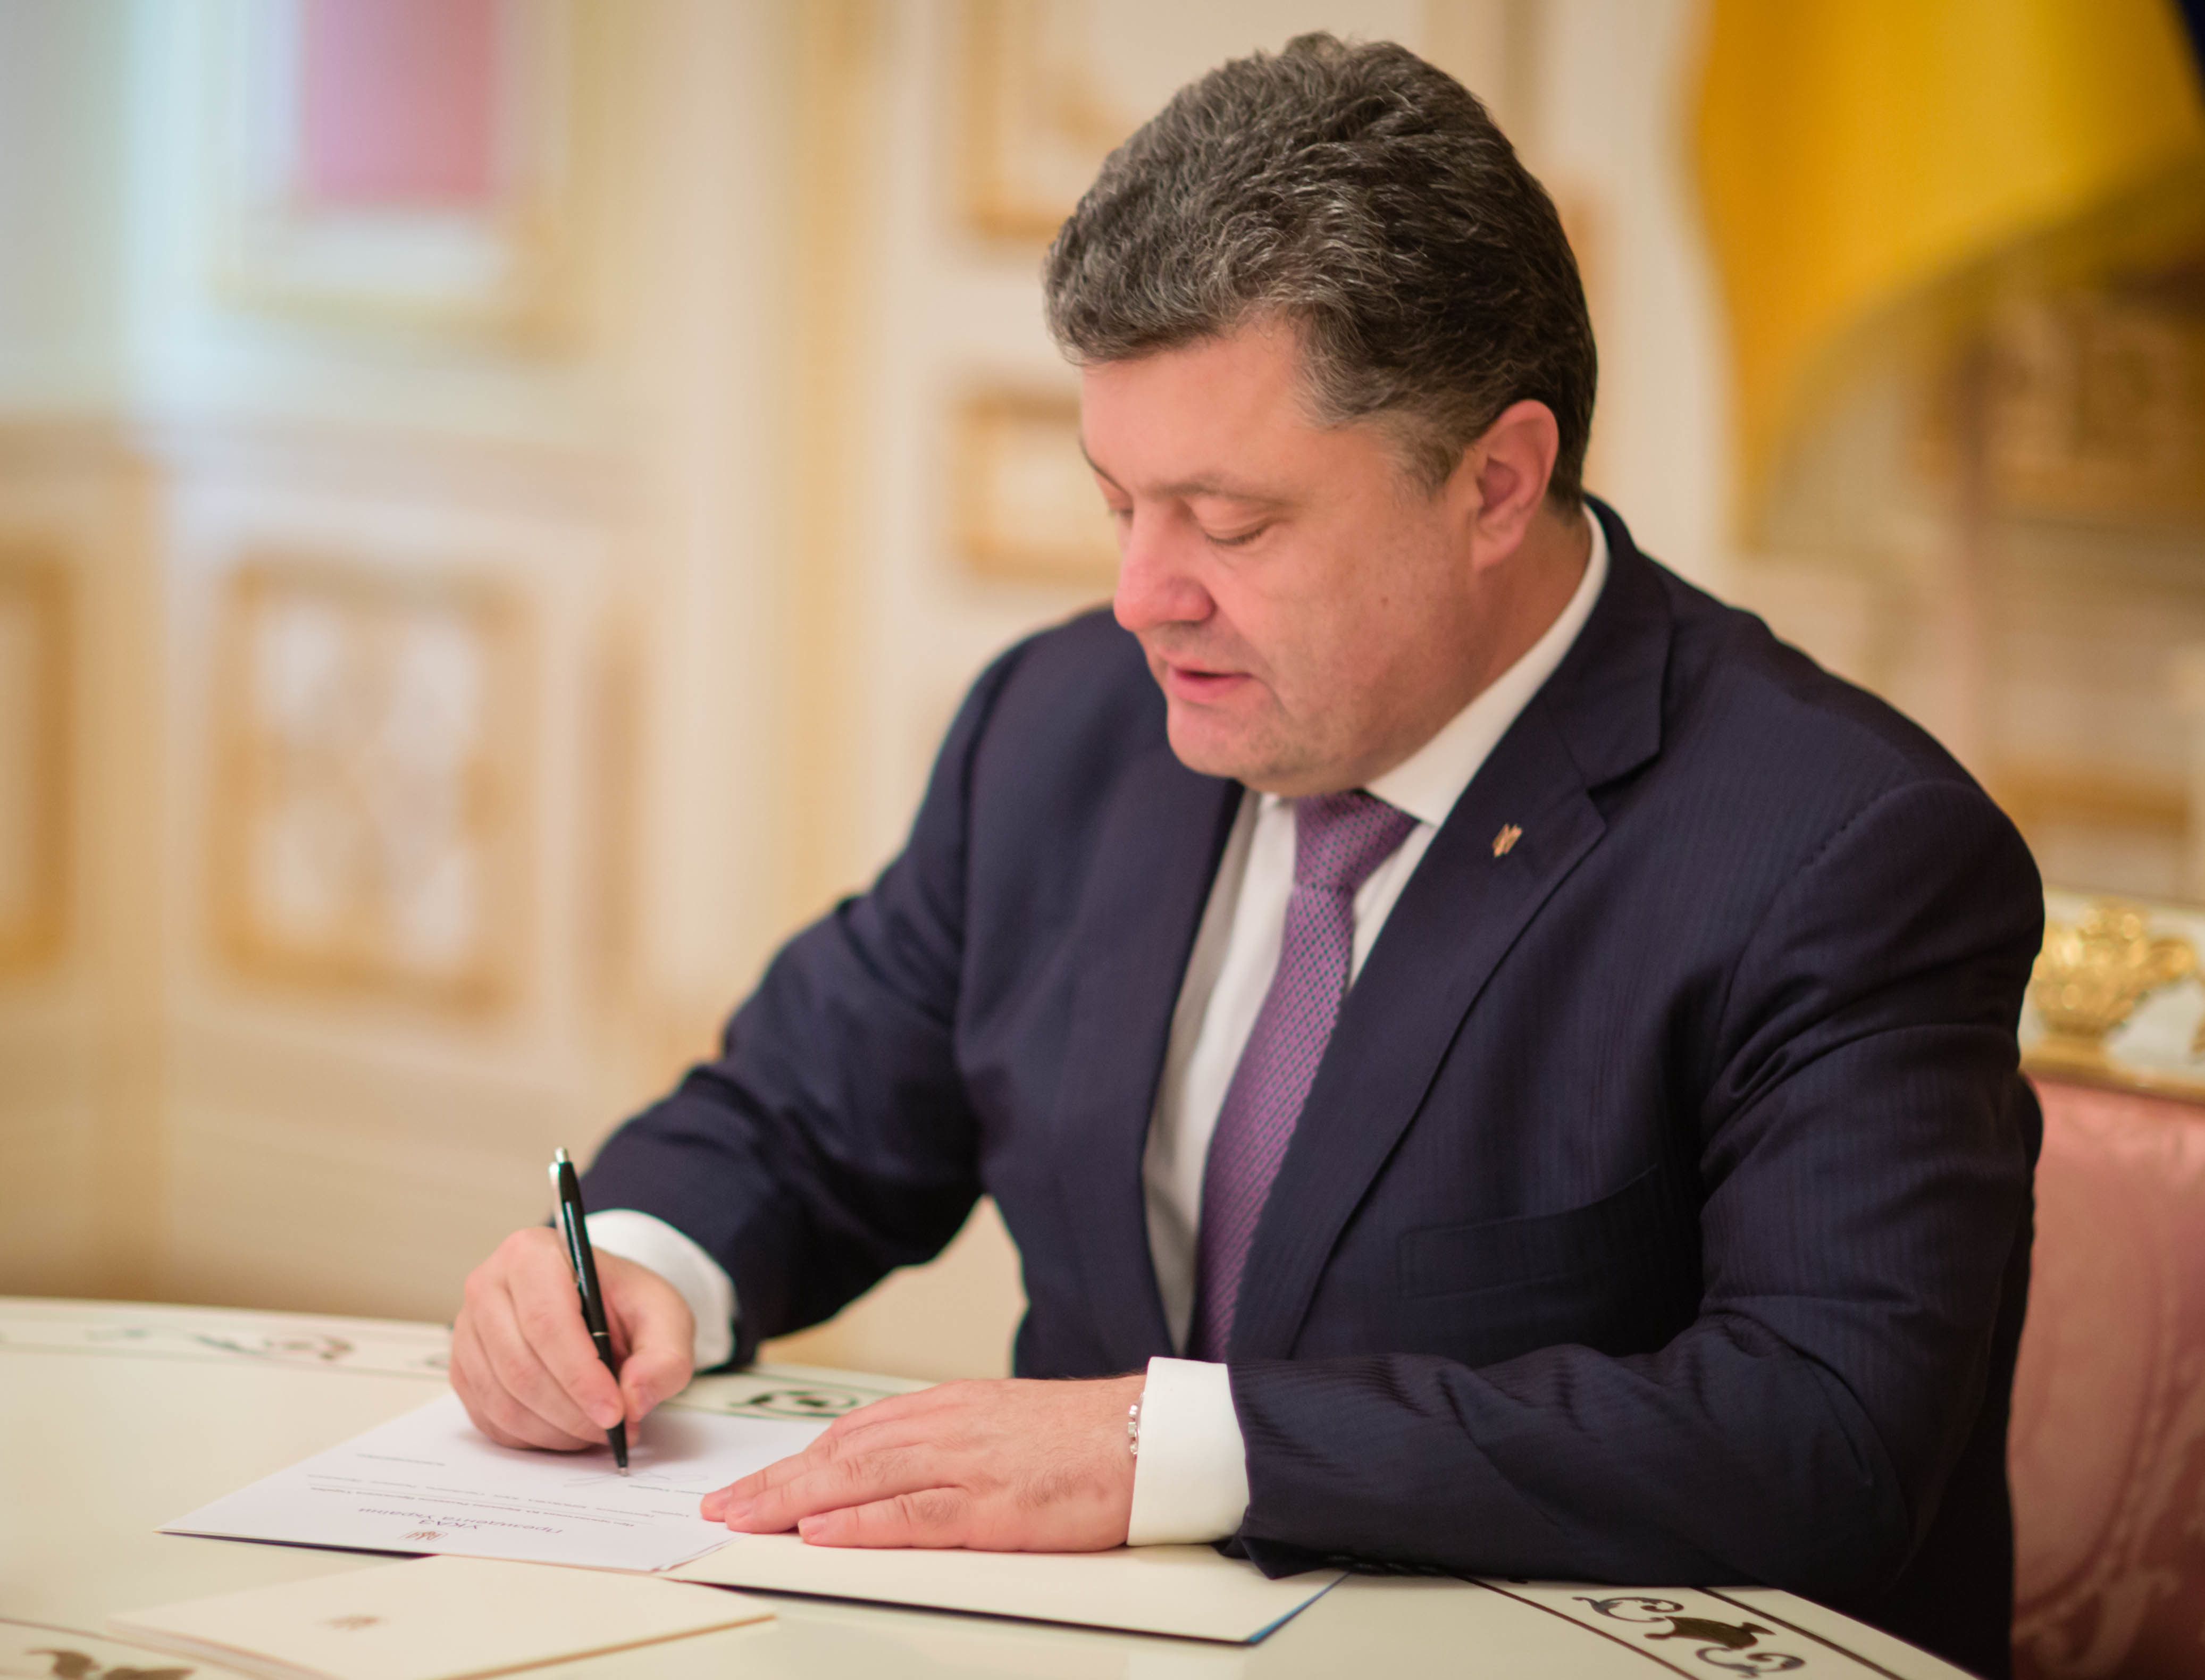 Порошенко підписав закон про особливий статус ОРДЛО. Суверенітет України поширюється на всю її територію, яка в межах міжнародно визнаного кордону є цілісною і недоторканною.